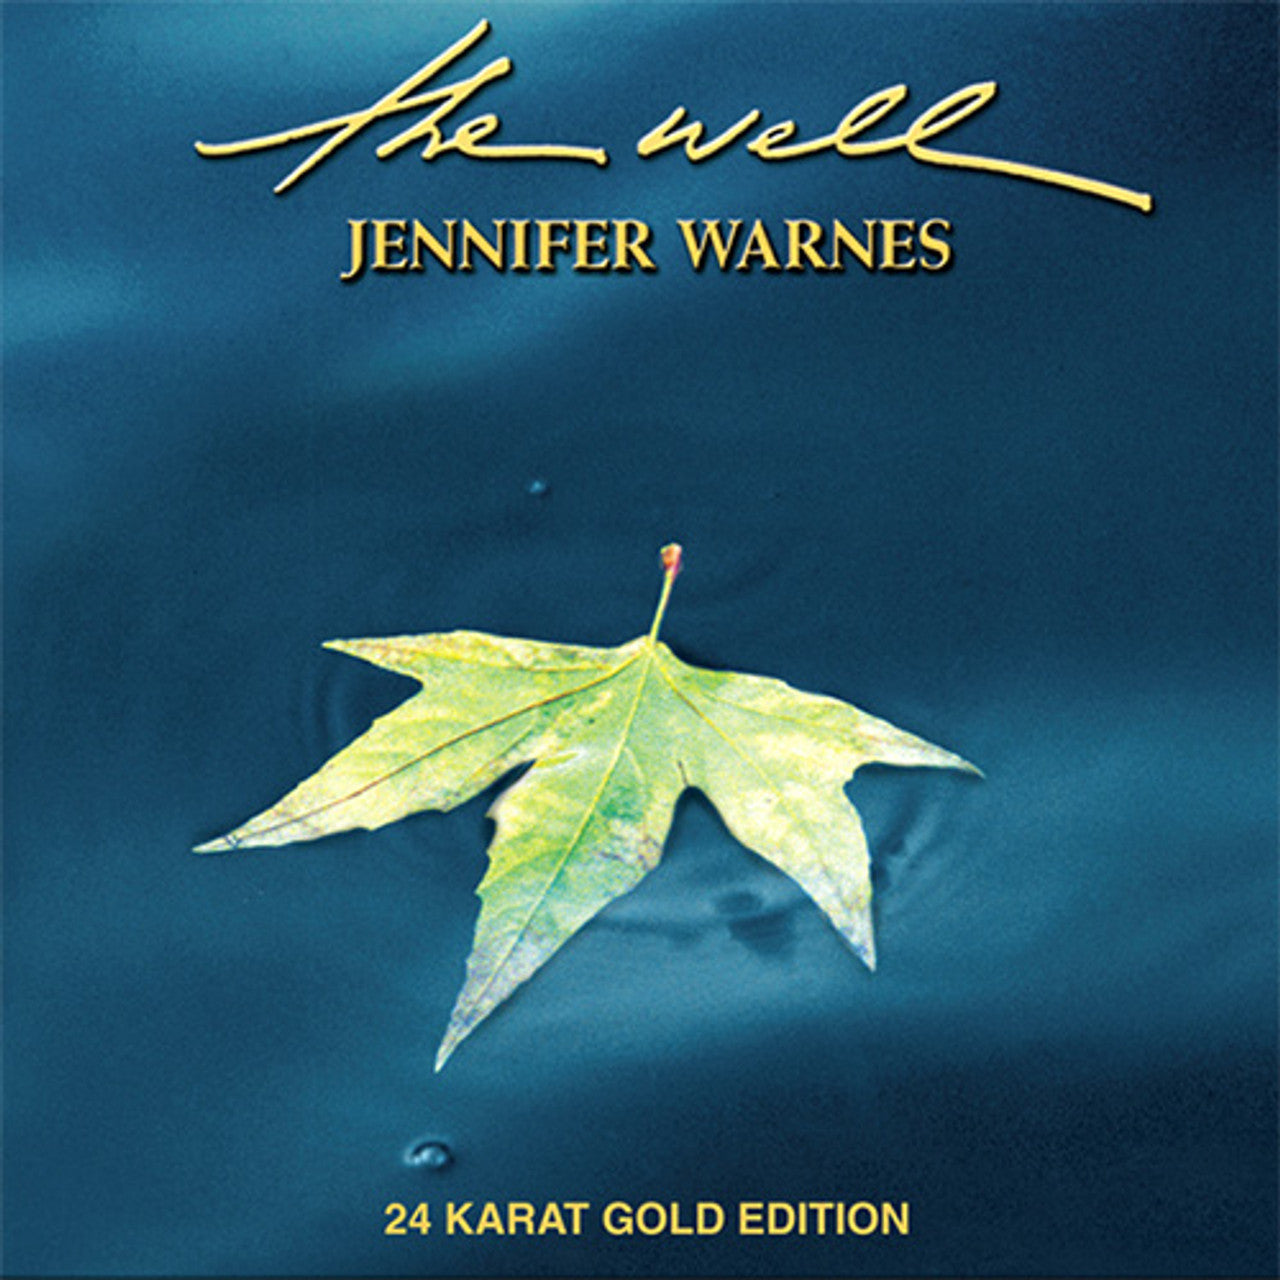 Jennifer warnes - el pozo - CD de oro